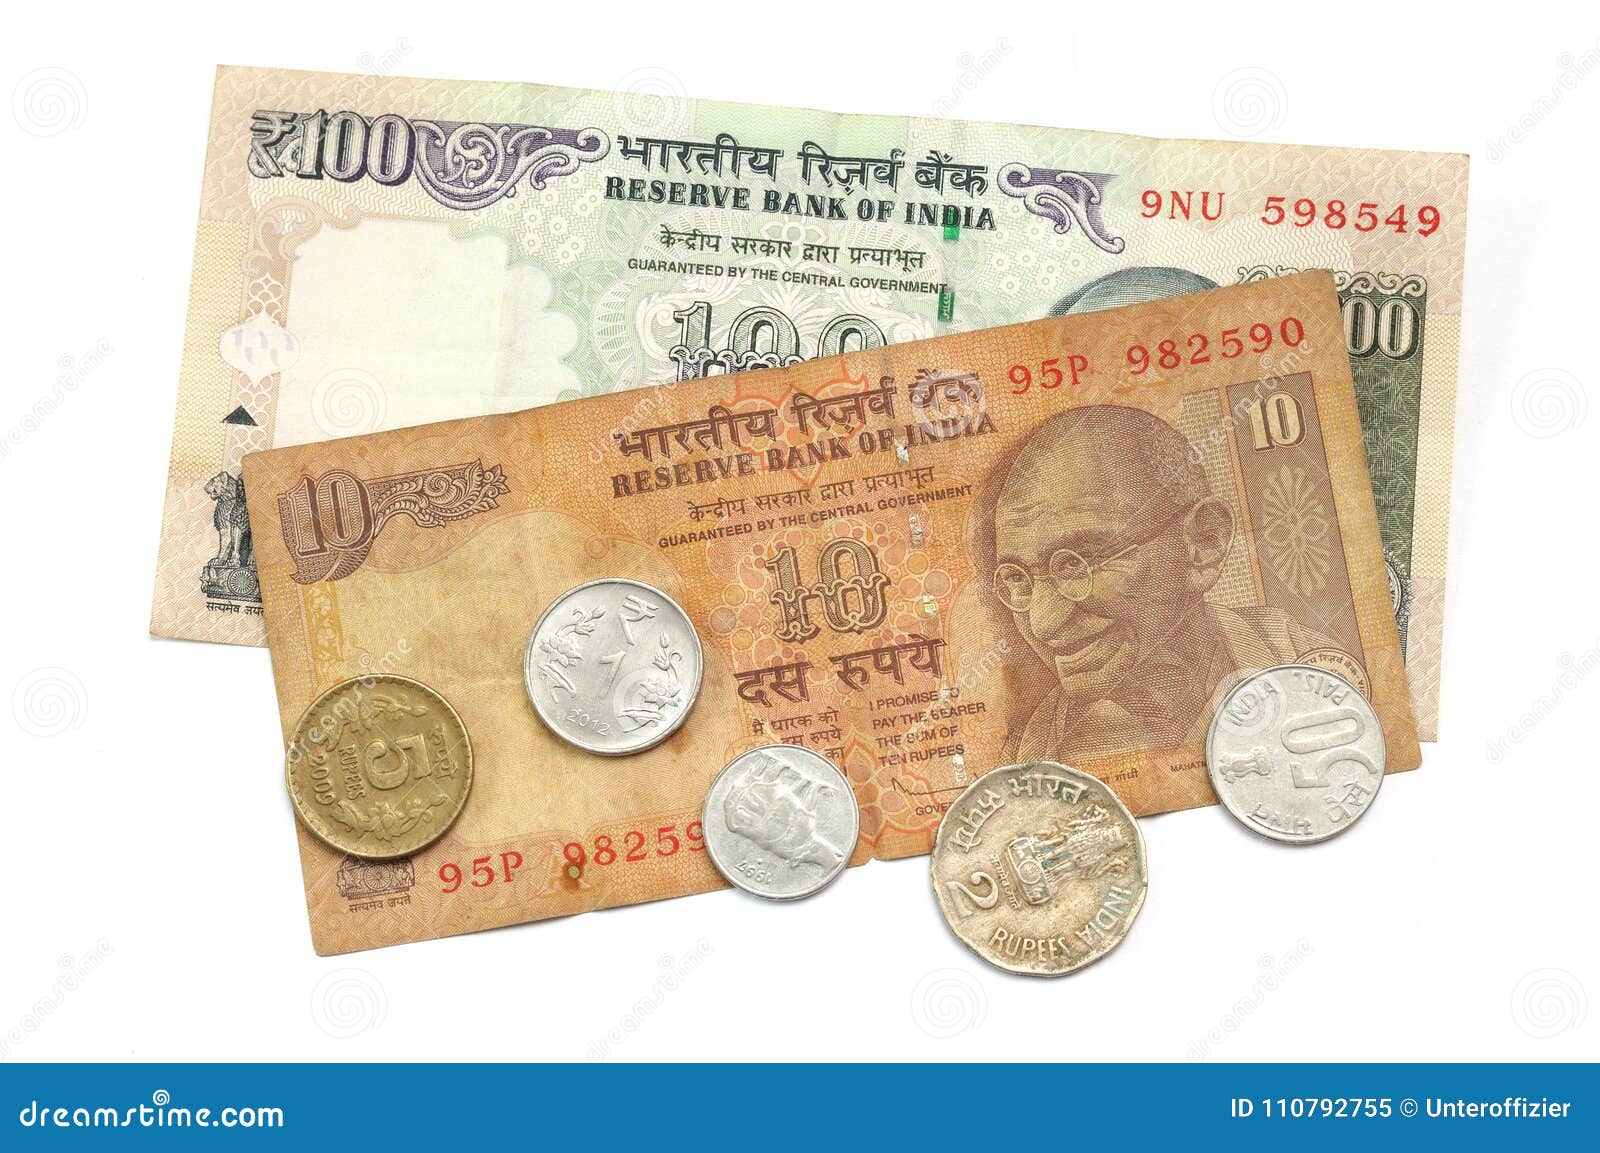 Доллары старого образца в египте принимают ли. Доллары старого образца в Тайланде. Самая Старая валюта в мире. СТО доллар Индия. Доллары старого образца принимают в ОАЭ.